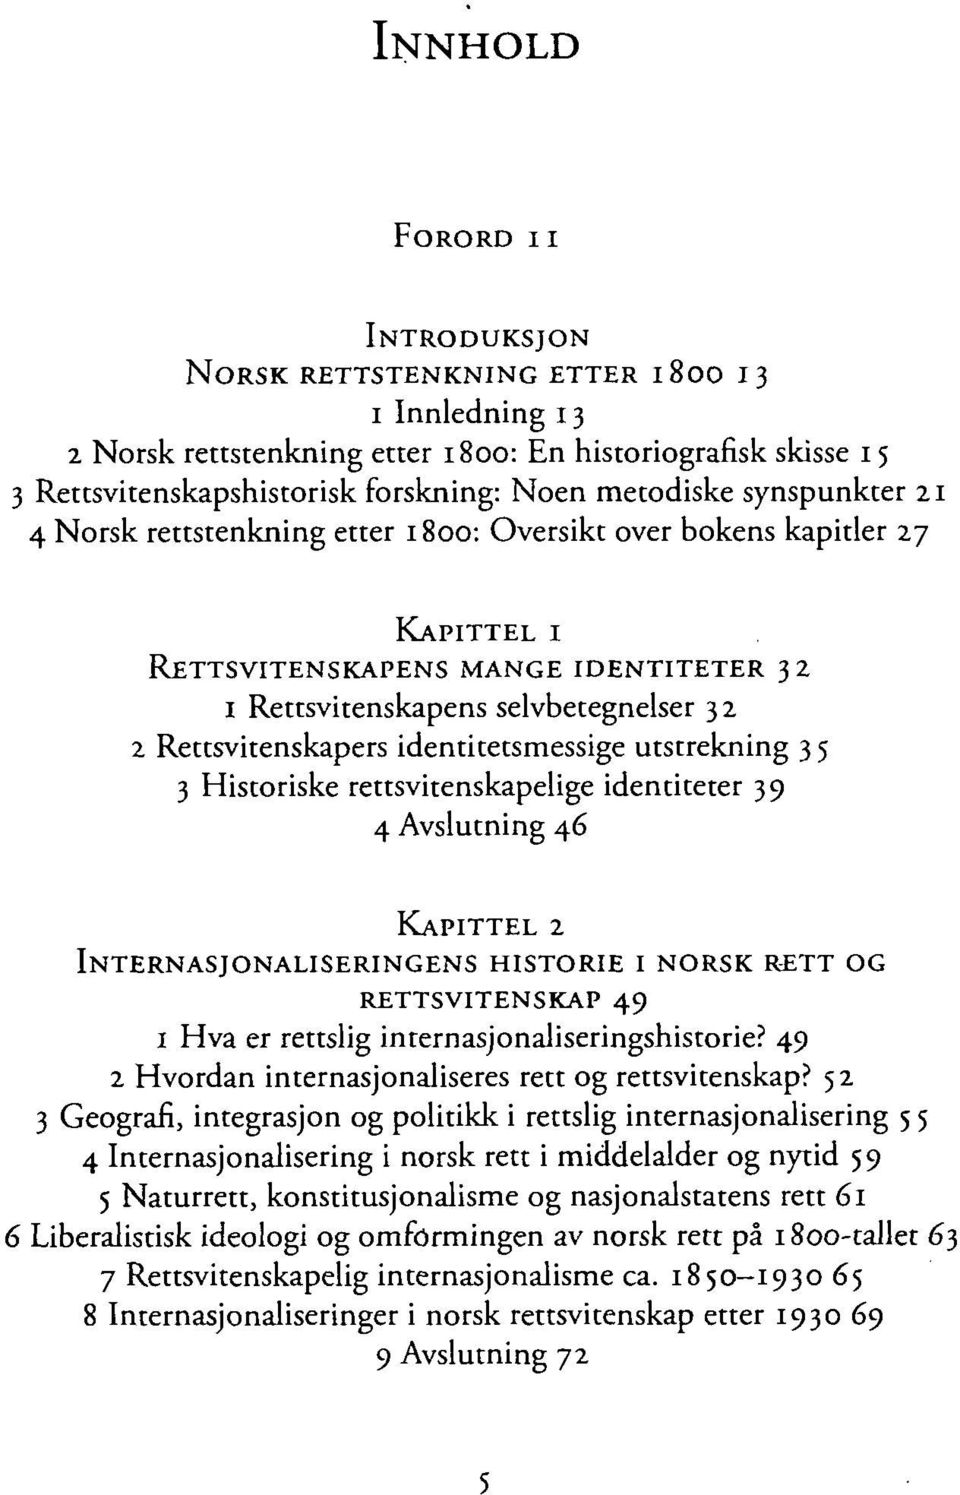 identitetsmessige utstrekning 3 5 3 Historiske rettsvitenskapelige identiteter 39 4 Avslutning 46 KAPITTEL 2 INTERNASJONALISERINGENS HISTORIE I NORSK RETT OG RETTSVITENSKAP 49 i Hva er rettslig